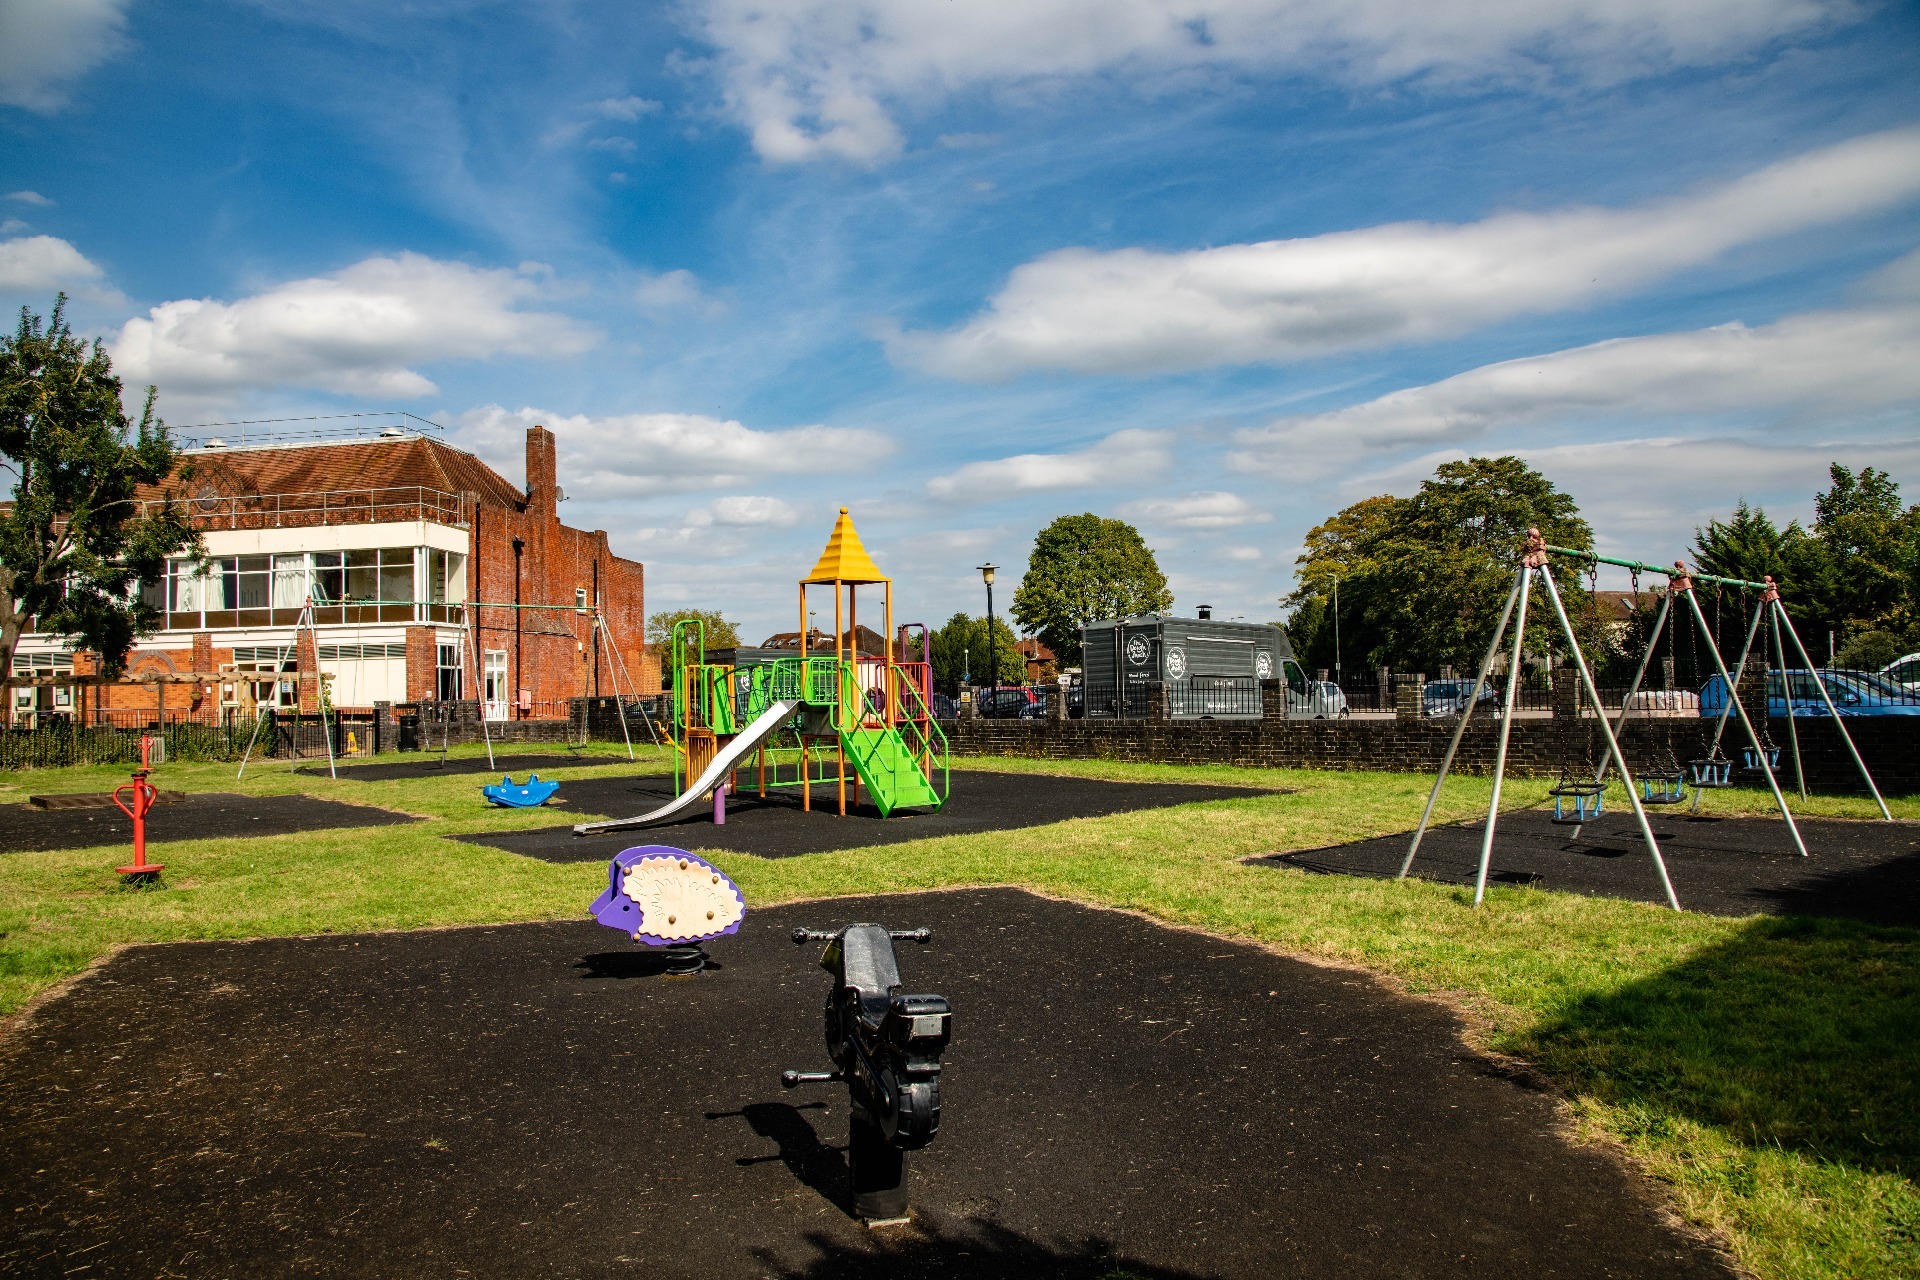 the playground at imber court